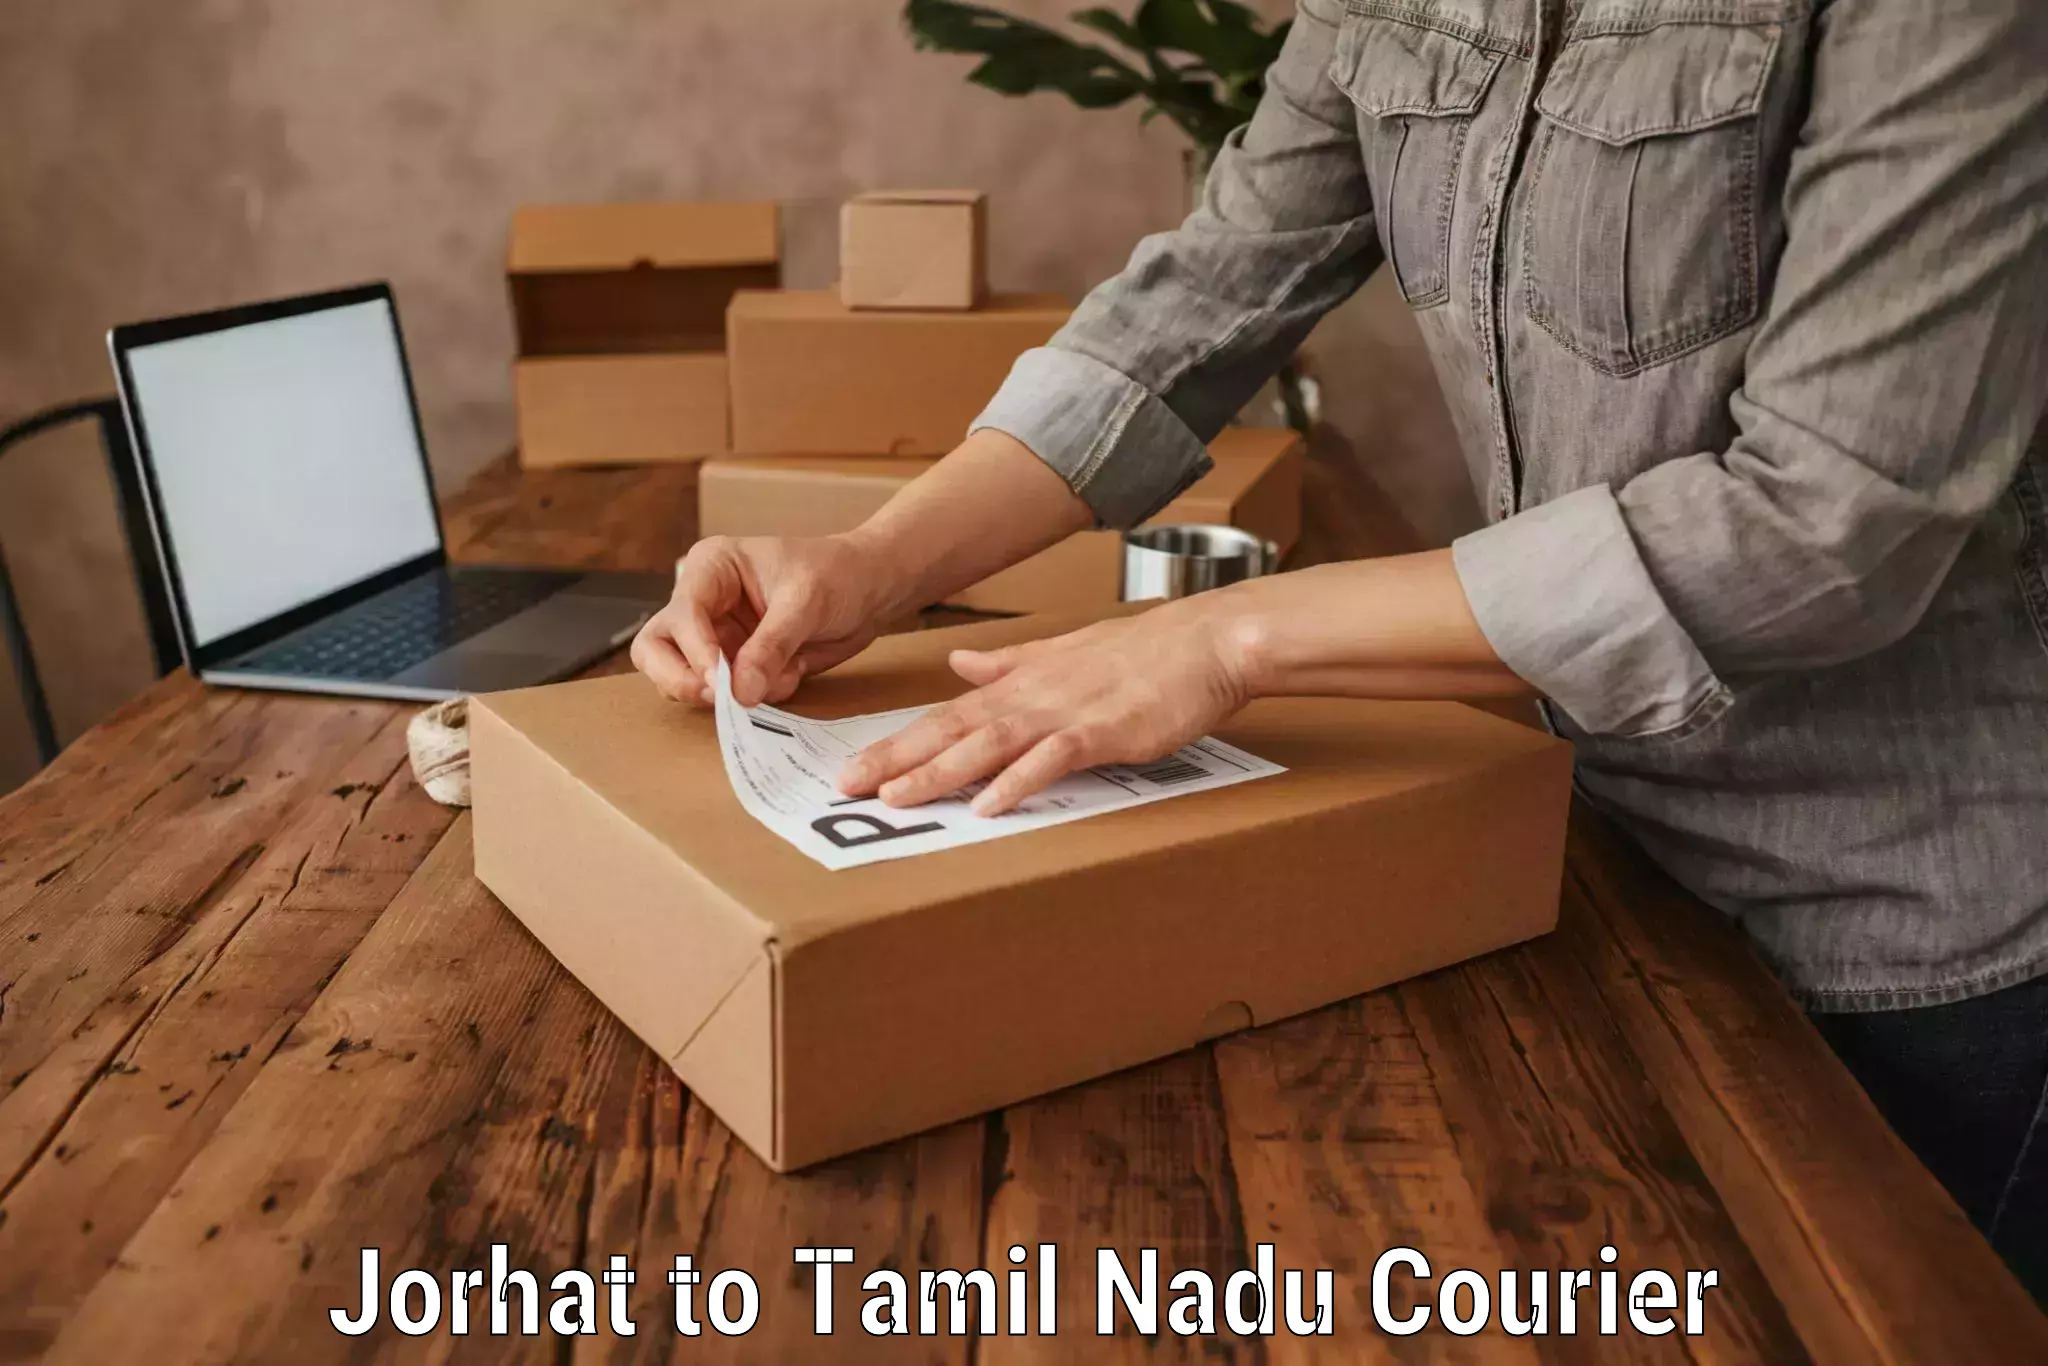 Luggage shipment specialists Jorhat to Tamil Nadu